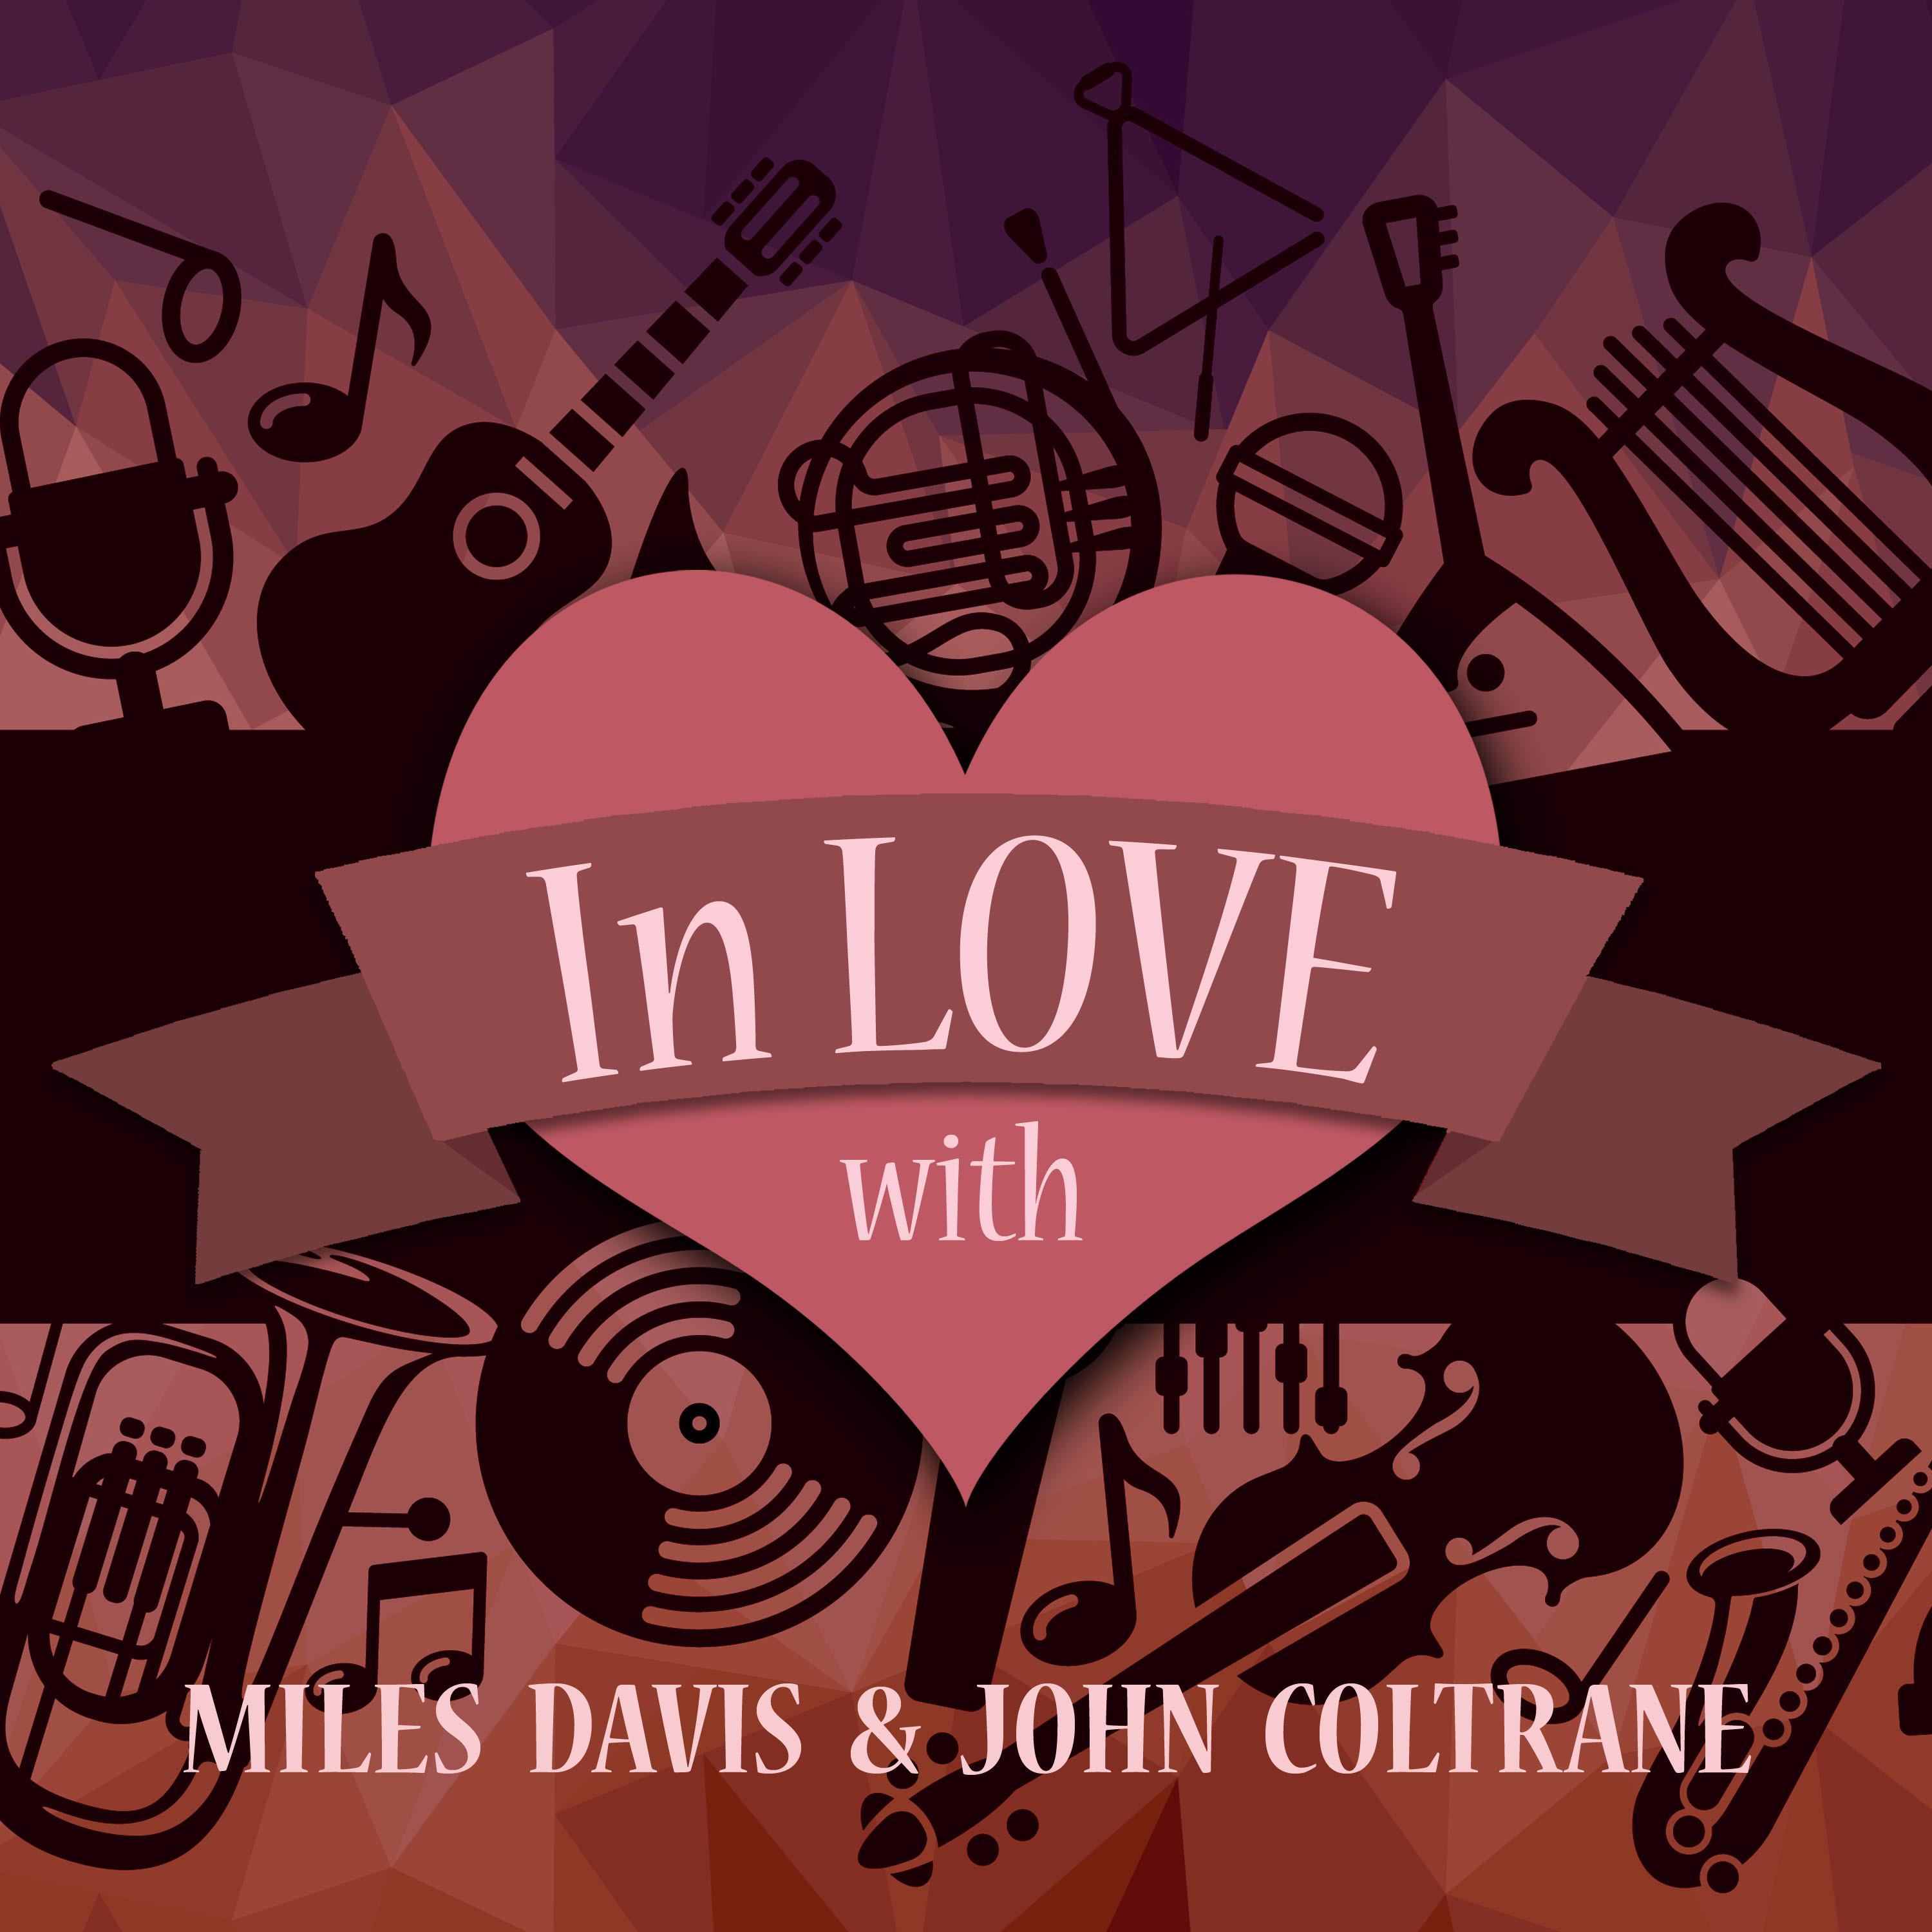 In Love with Miles Davis & John Coltrane